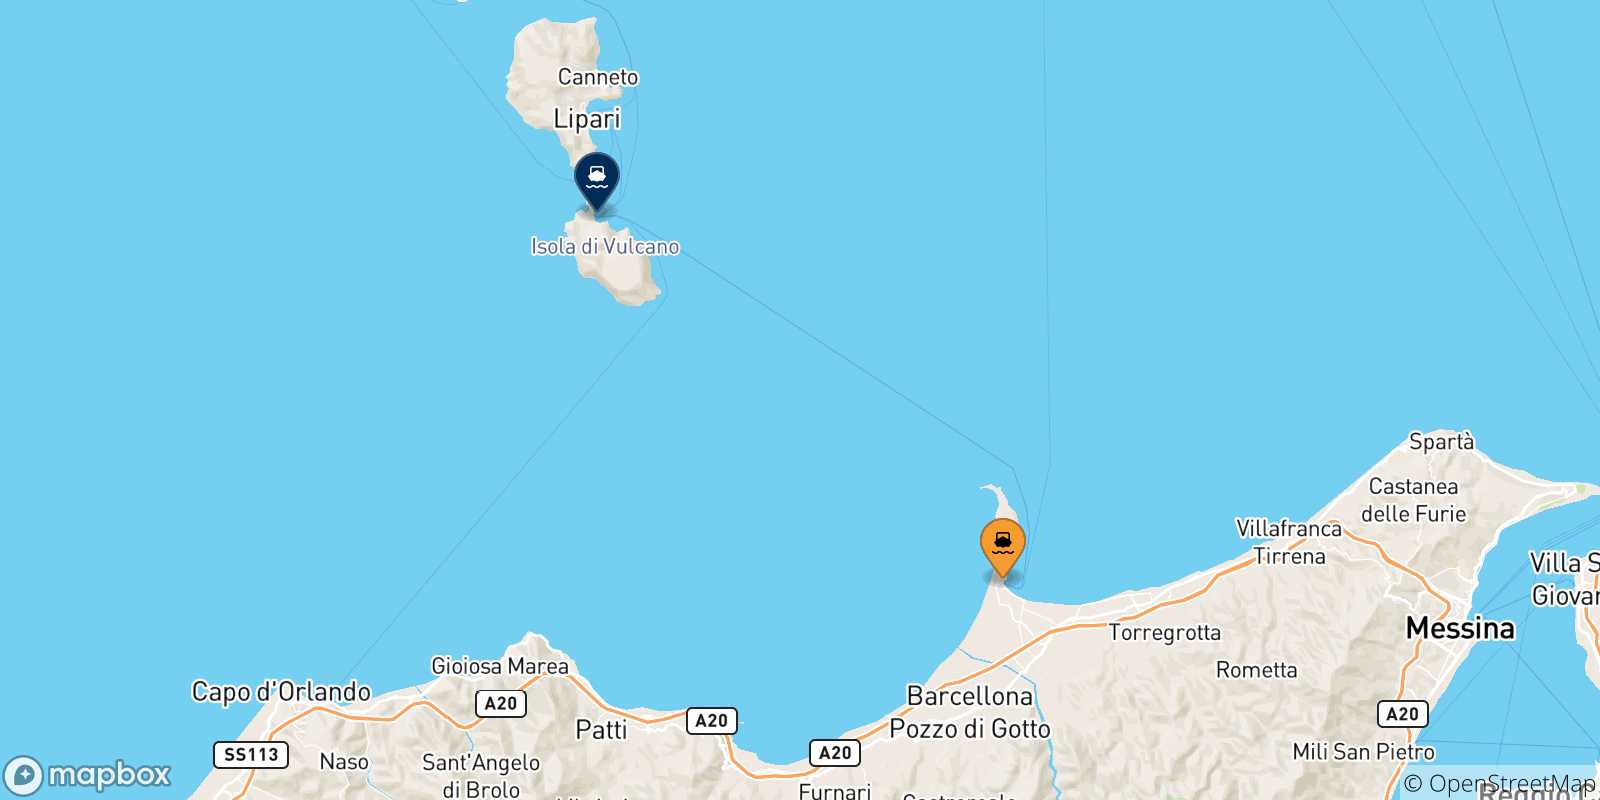 Mappa delle possibili rotte tra la Sicilia e Vulcano